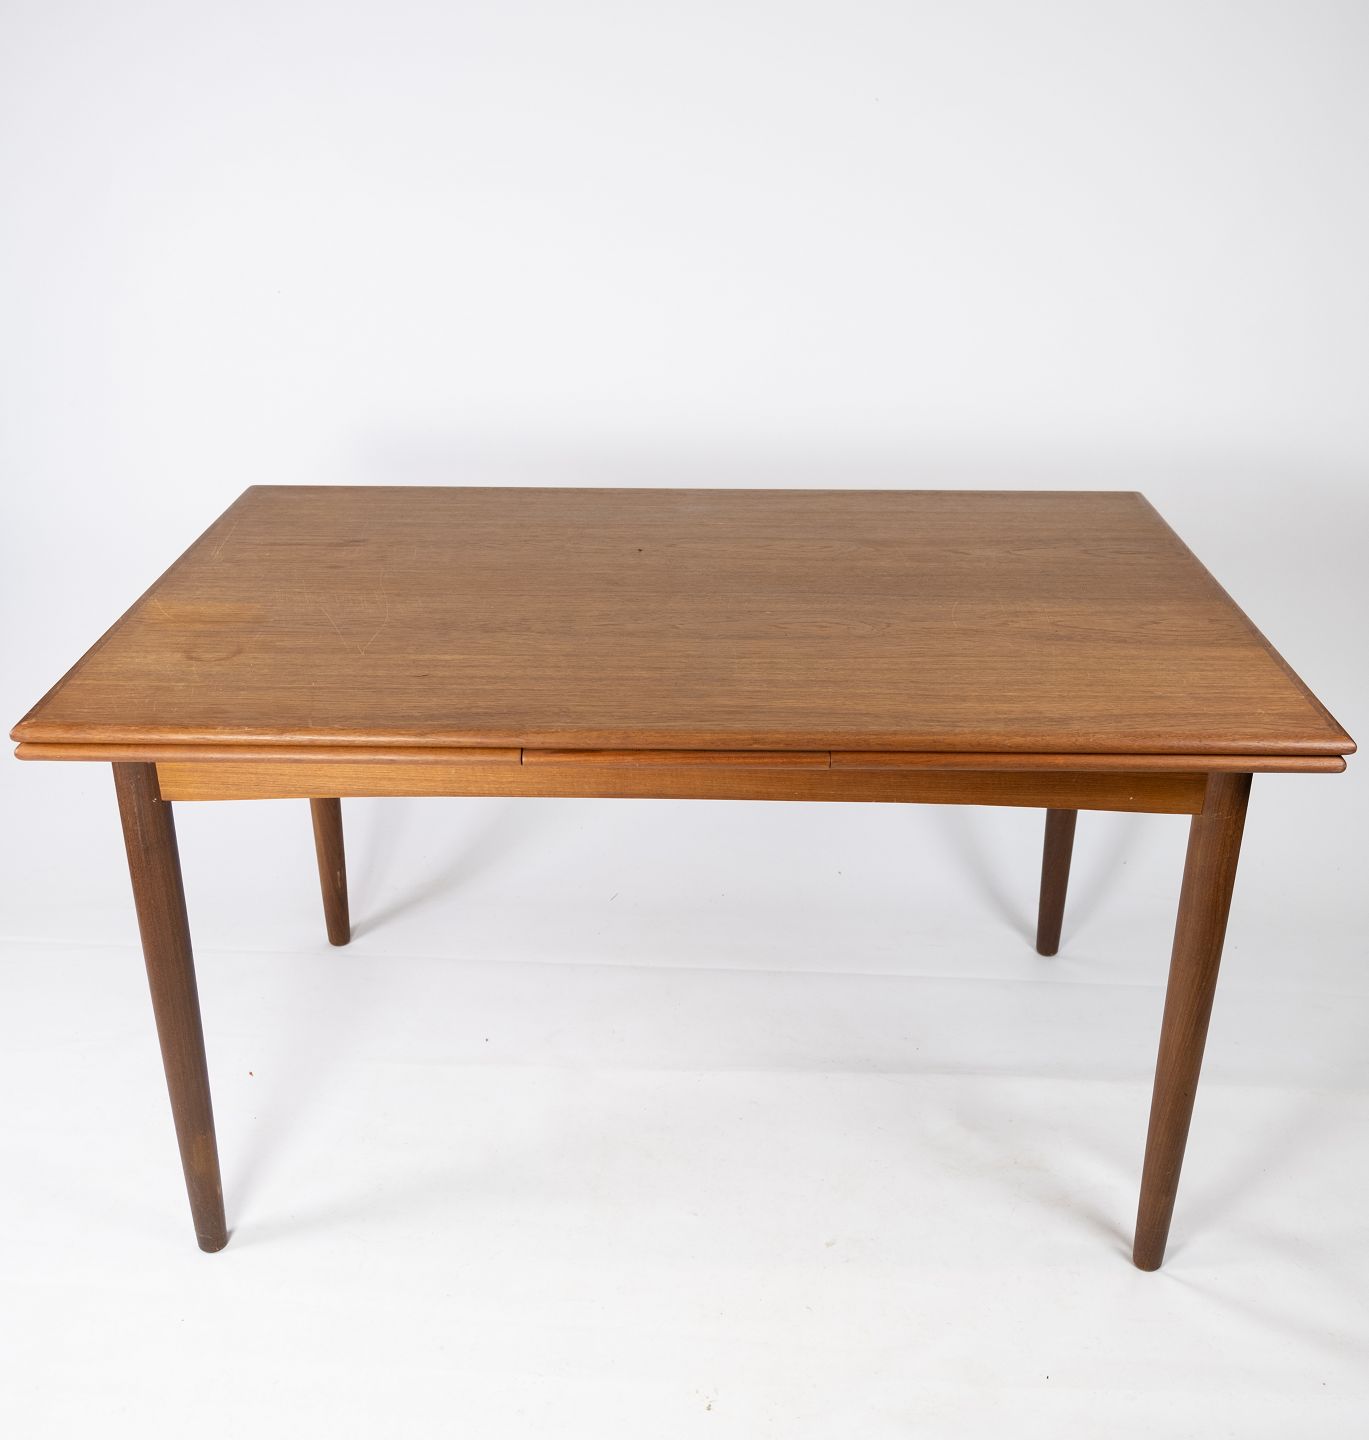 KAD ringen - Spisebord i teak med hollandsk udtræk af dansk design fra 1960erne. * 5000m2 uds - Spisebord i teak med hollandsk af dansk design fra * 5000m2 uds